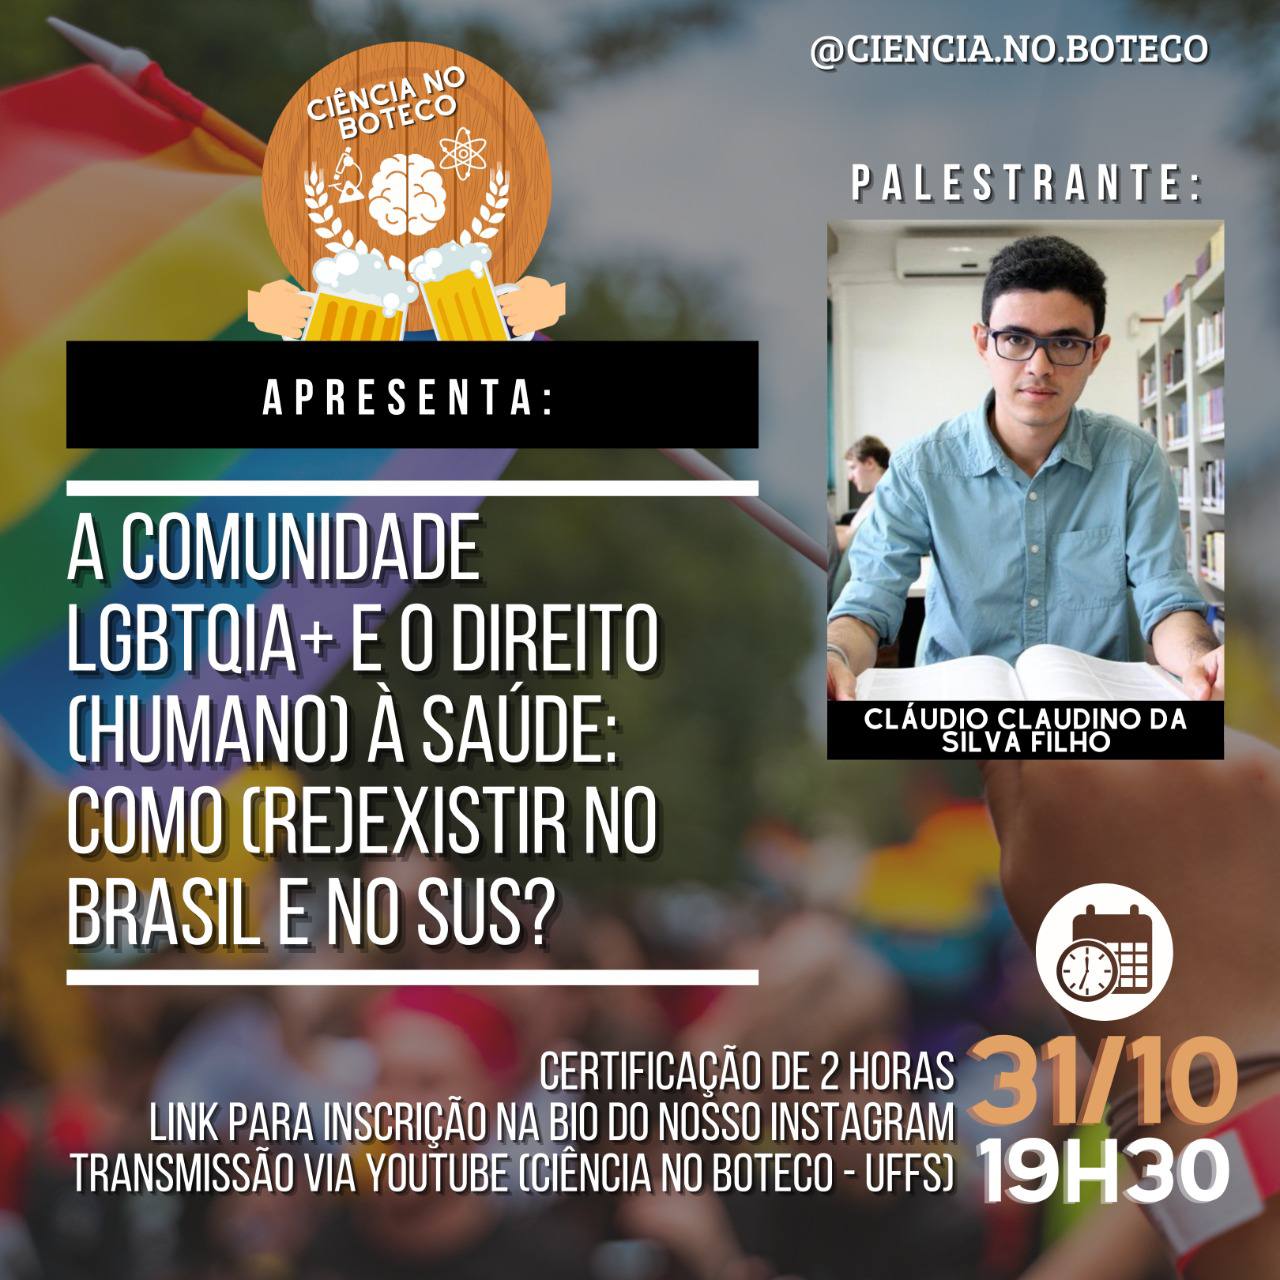 6º Evento - Ciência no Boteco - A comunidade LGBTQIA+